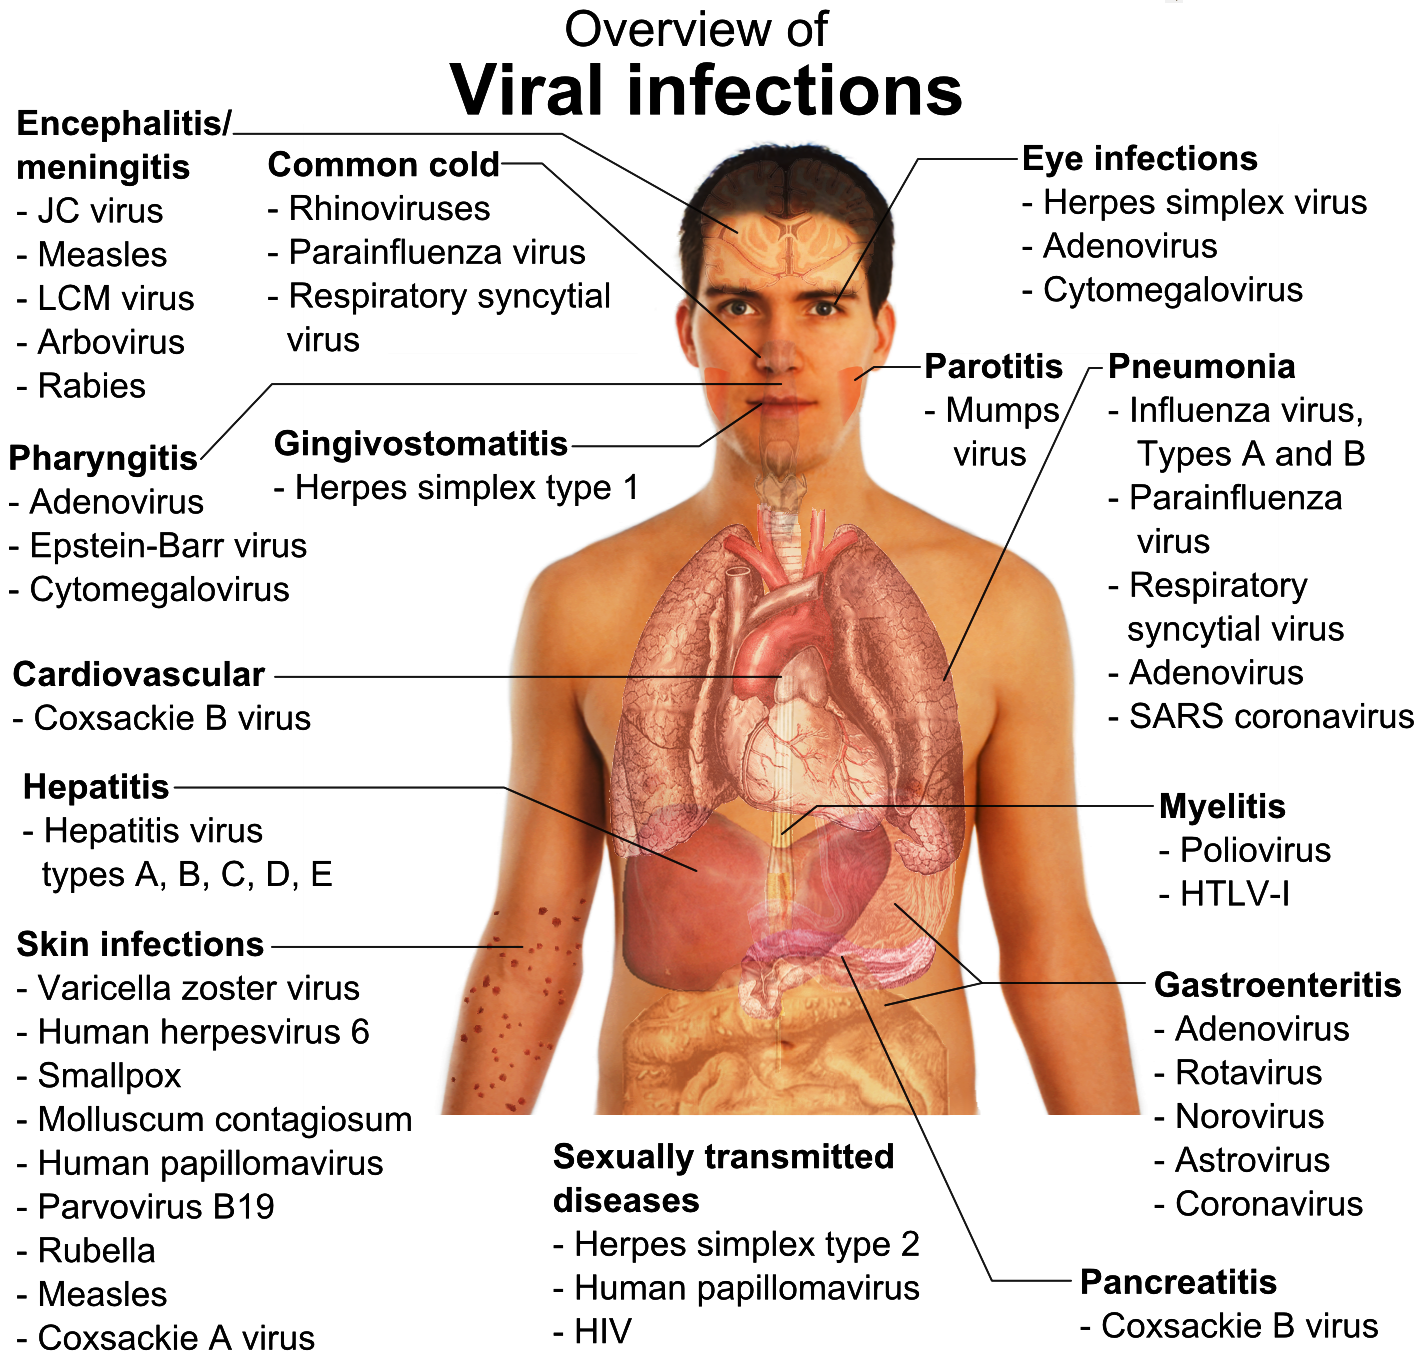 बाजुरा,जाजरकोट लगातका बासिन्दामा फैलिएको भाइरल  H3N2भाइरस किटाणुको सक्रमण भएको प्रमाणित, कालीकोटमा औषधी पुग्यो, जनशक्ती पुगेन